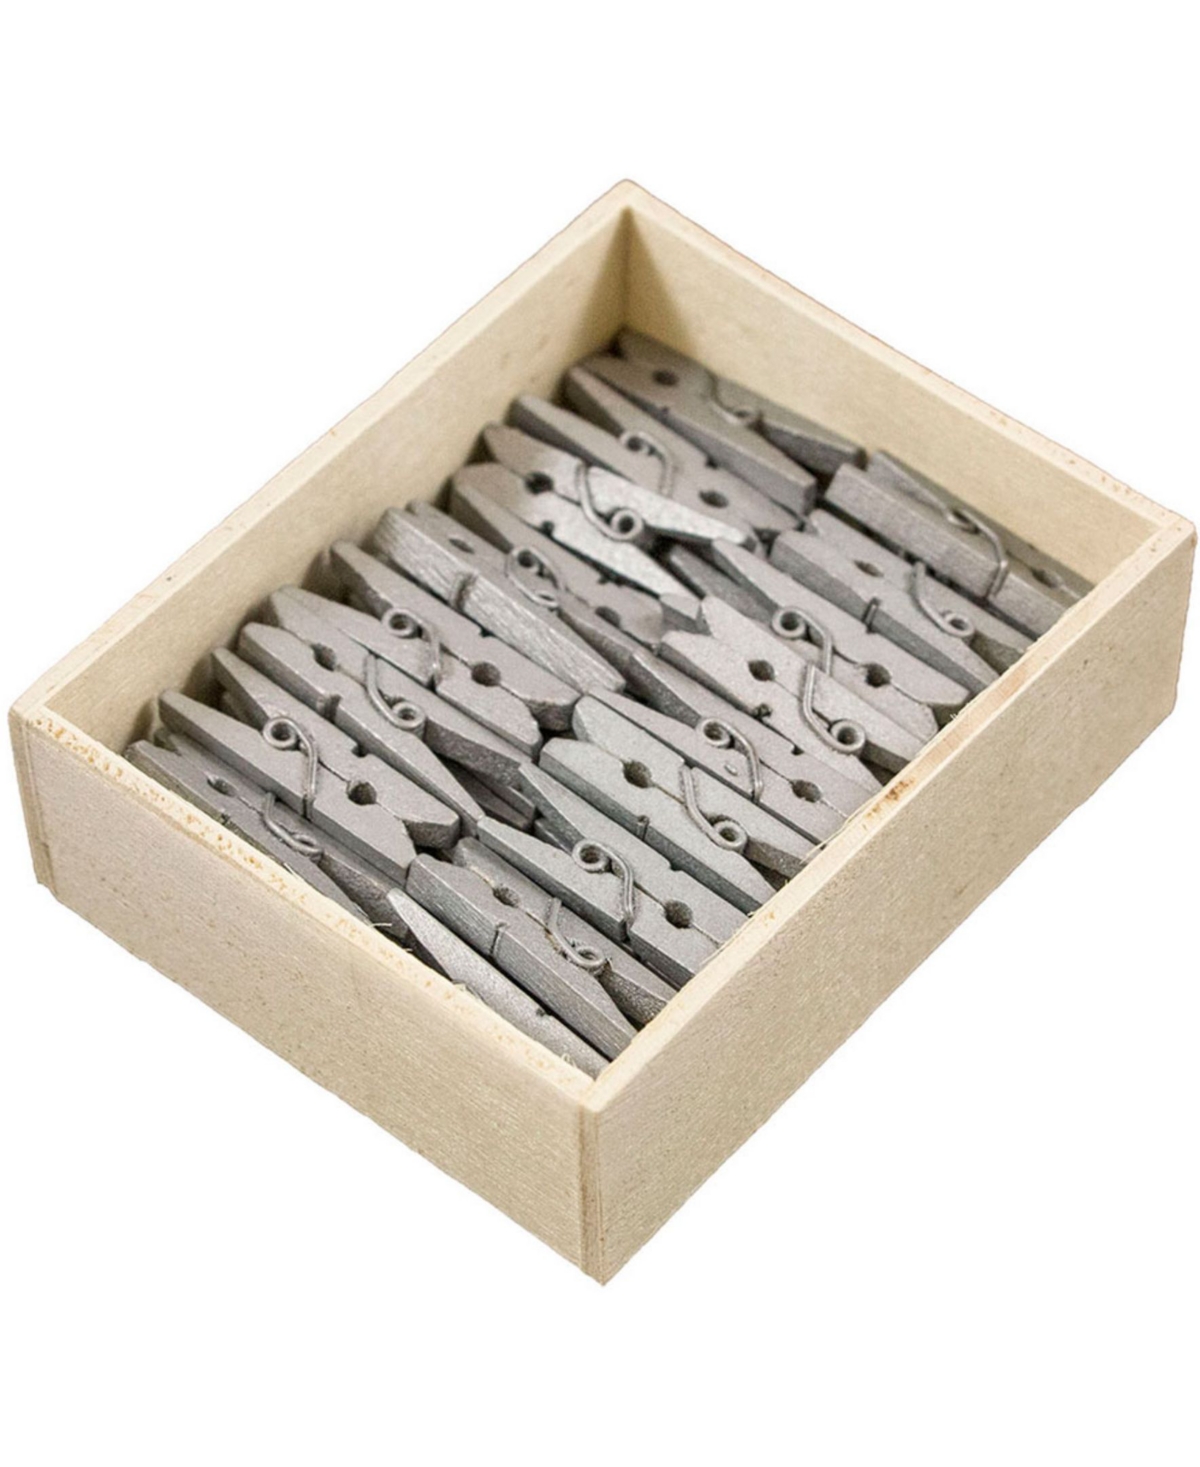 Wood Clip Clothespins - Medium - 1.13" - 50 Clothes Pins Per Pack - Silver